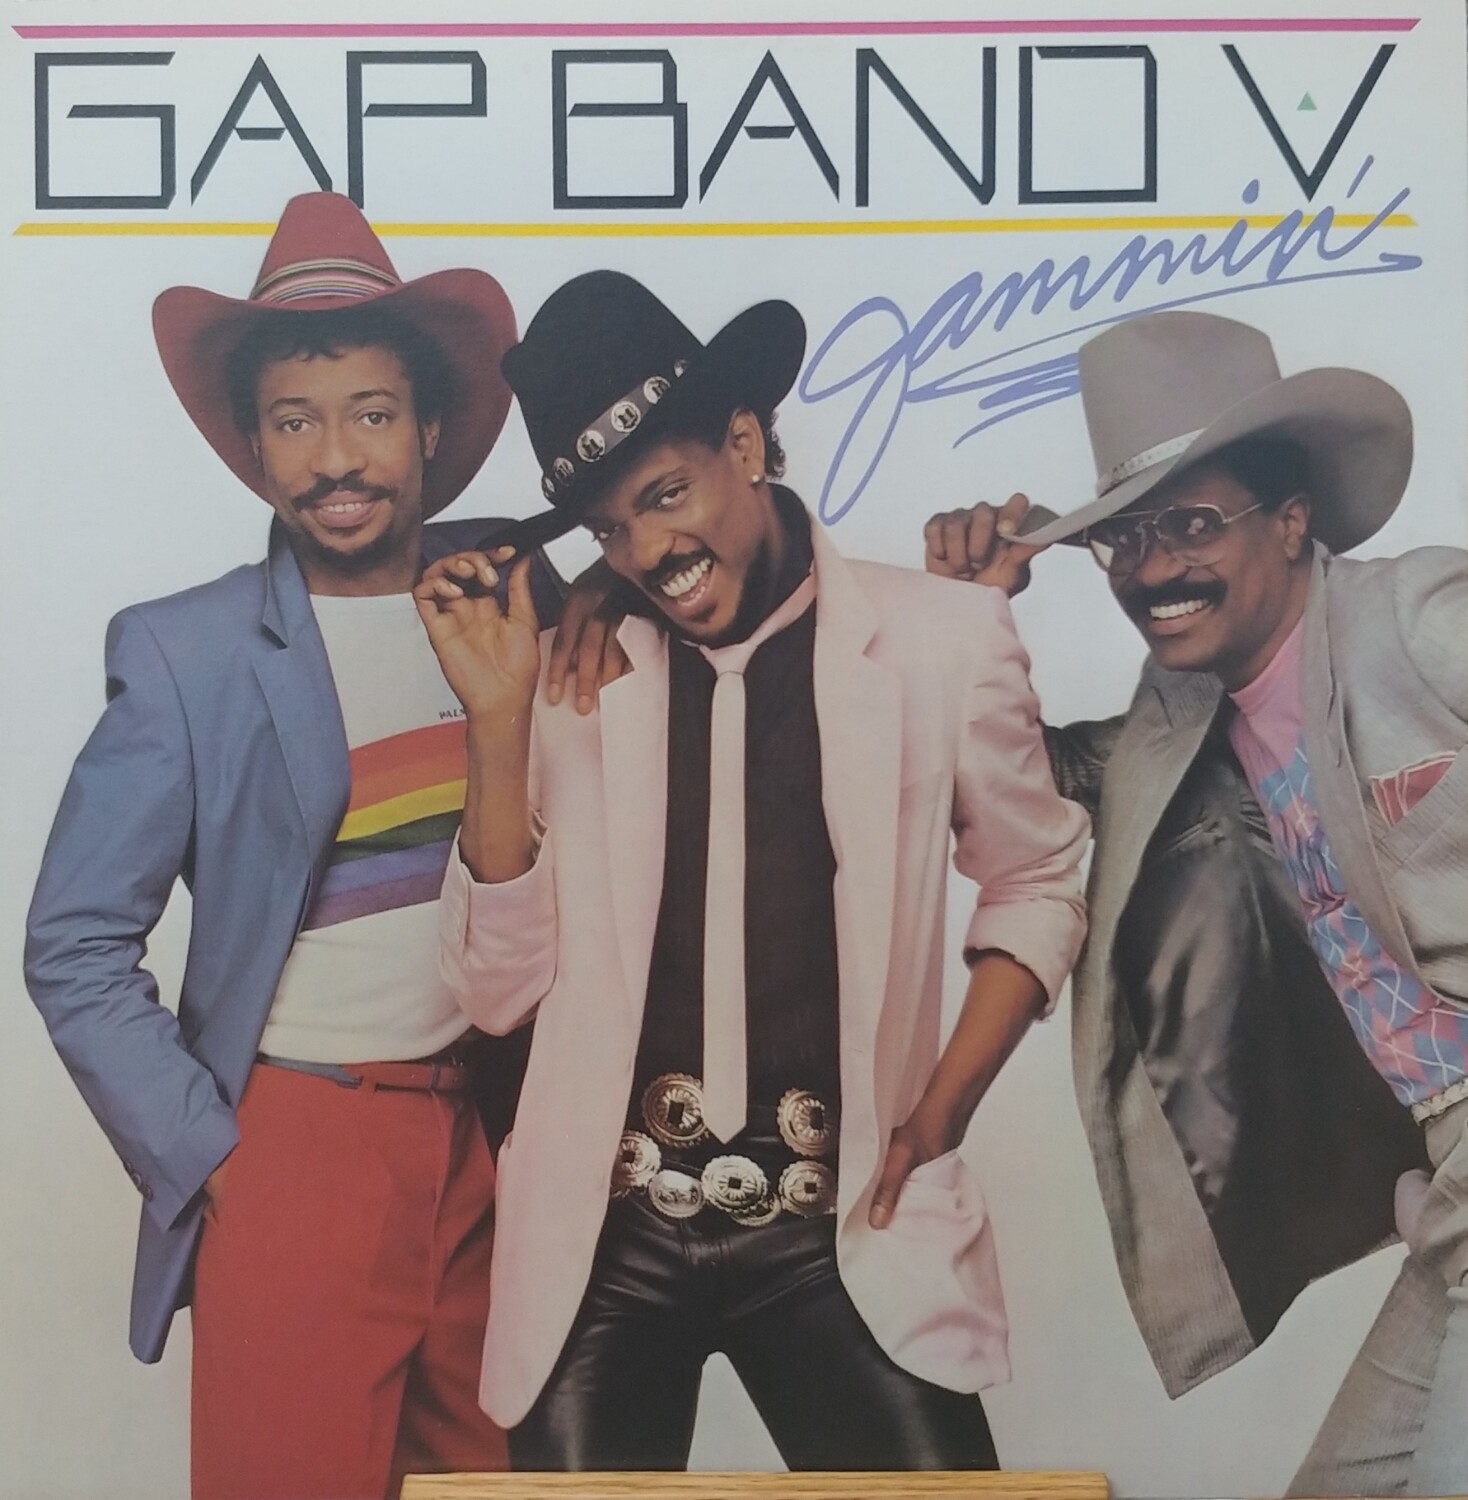 Gap Band V - Jammin'